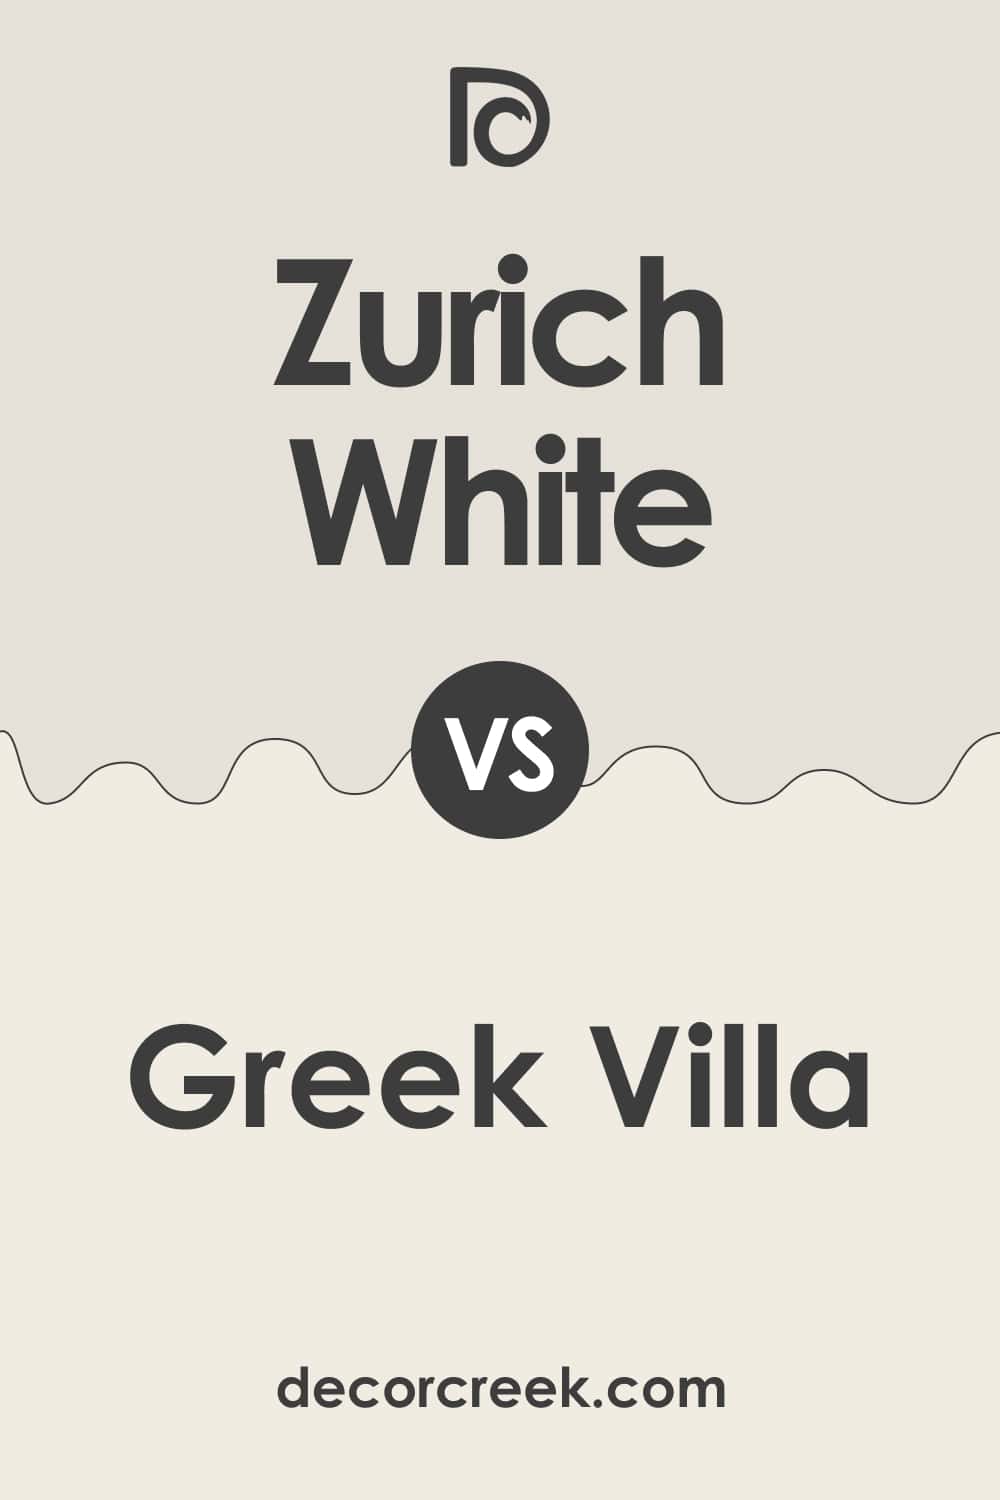 Zurich White vs Greek Villa